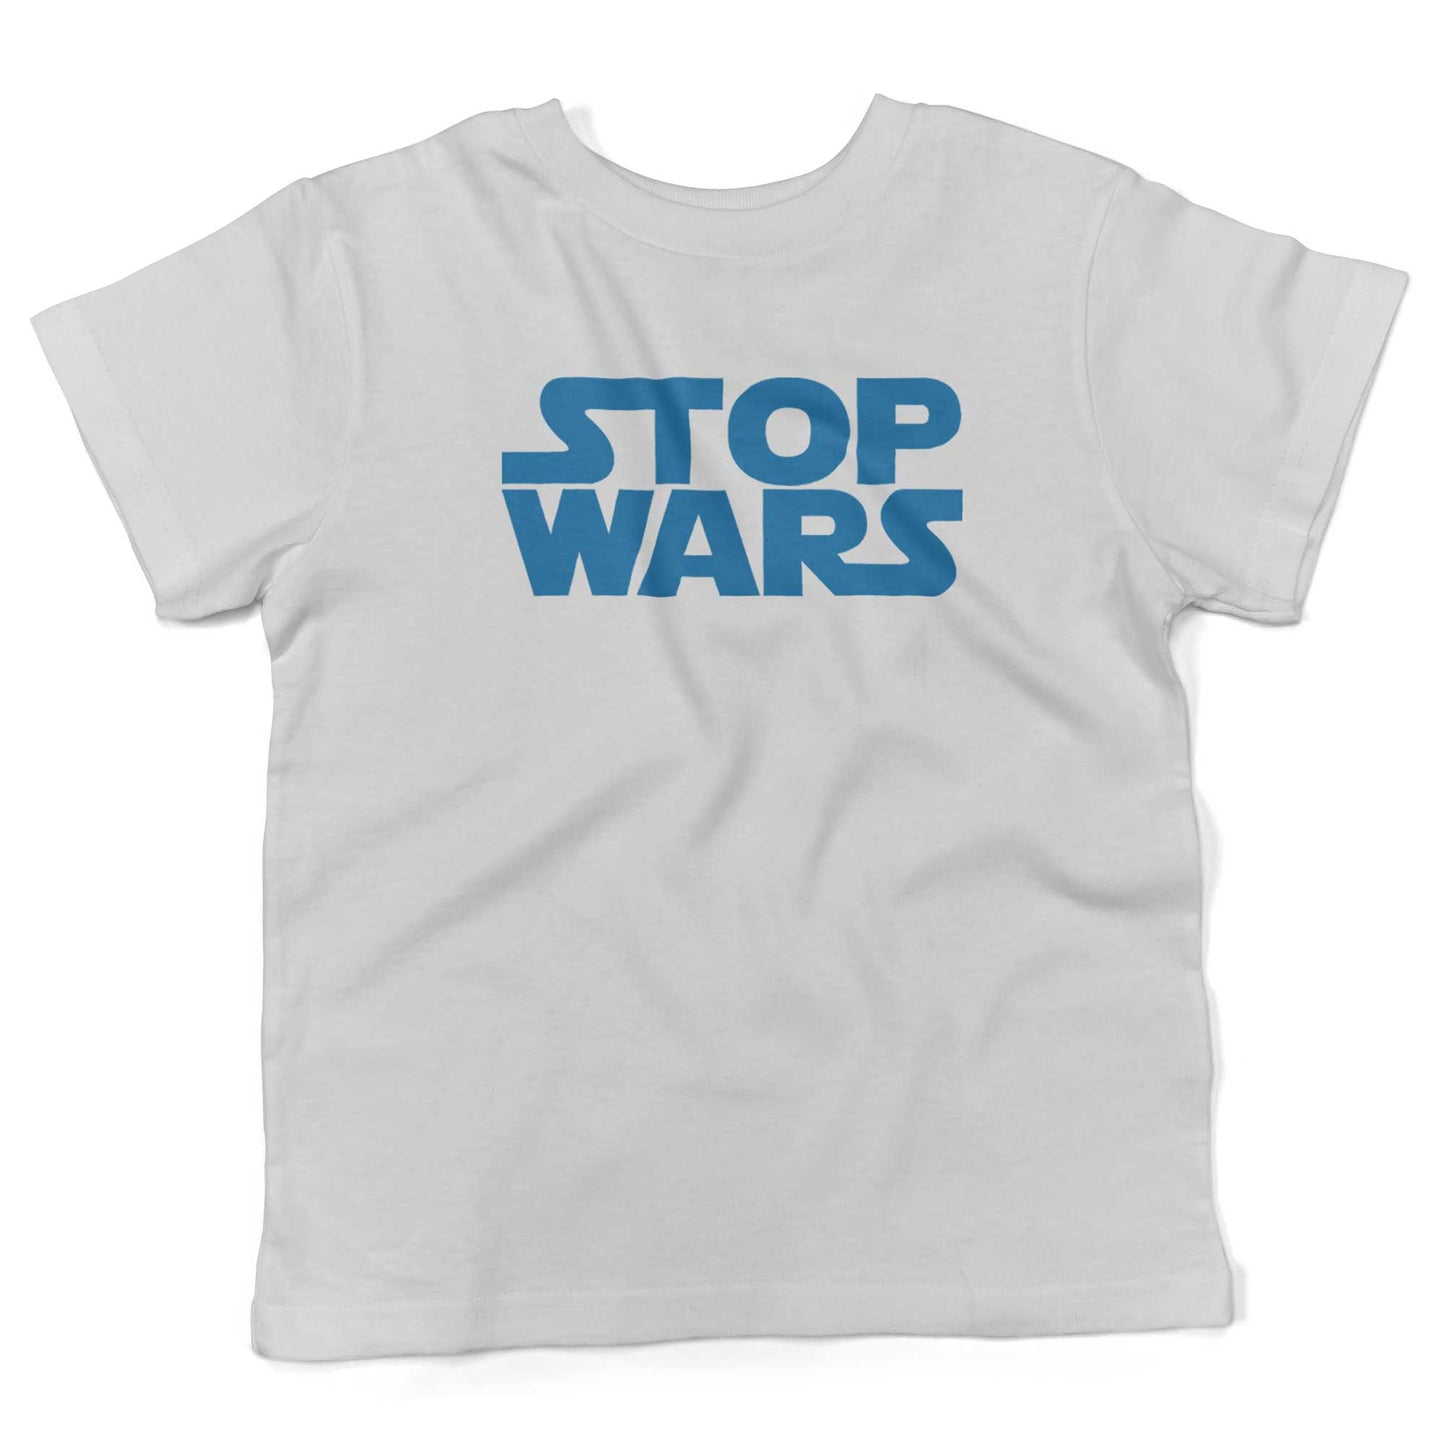 STOP WARS Toddler Shirt-White-2T